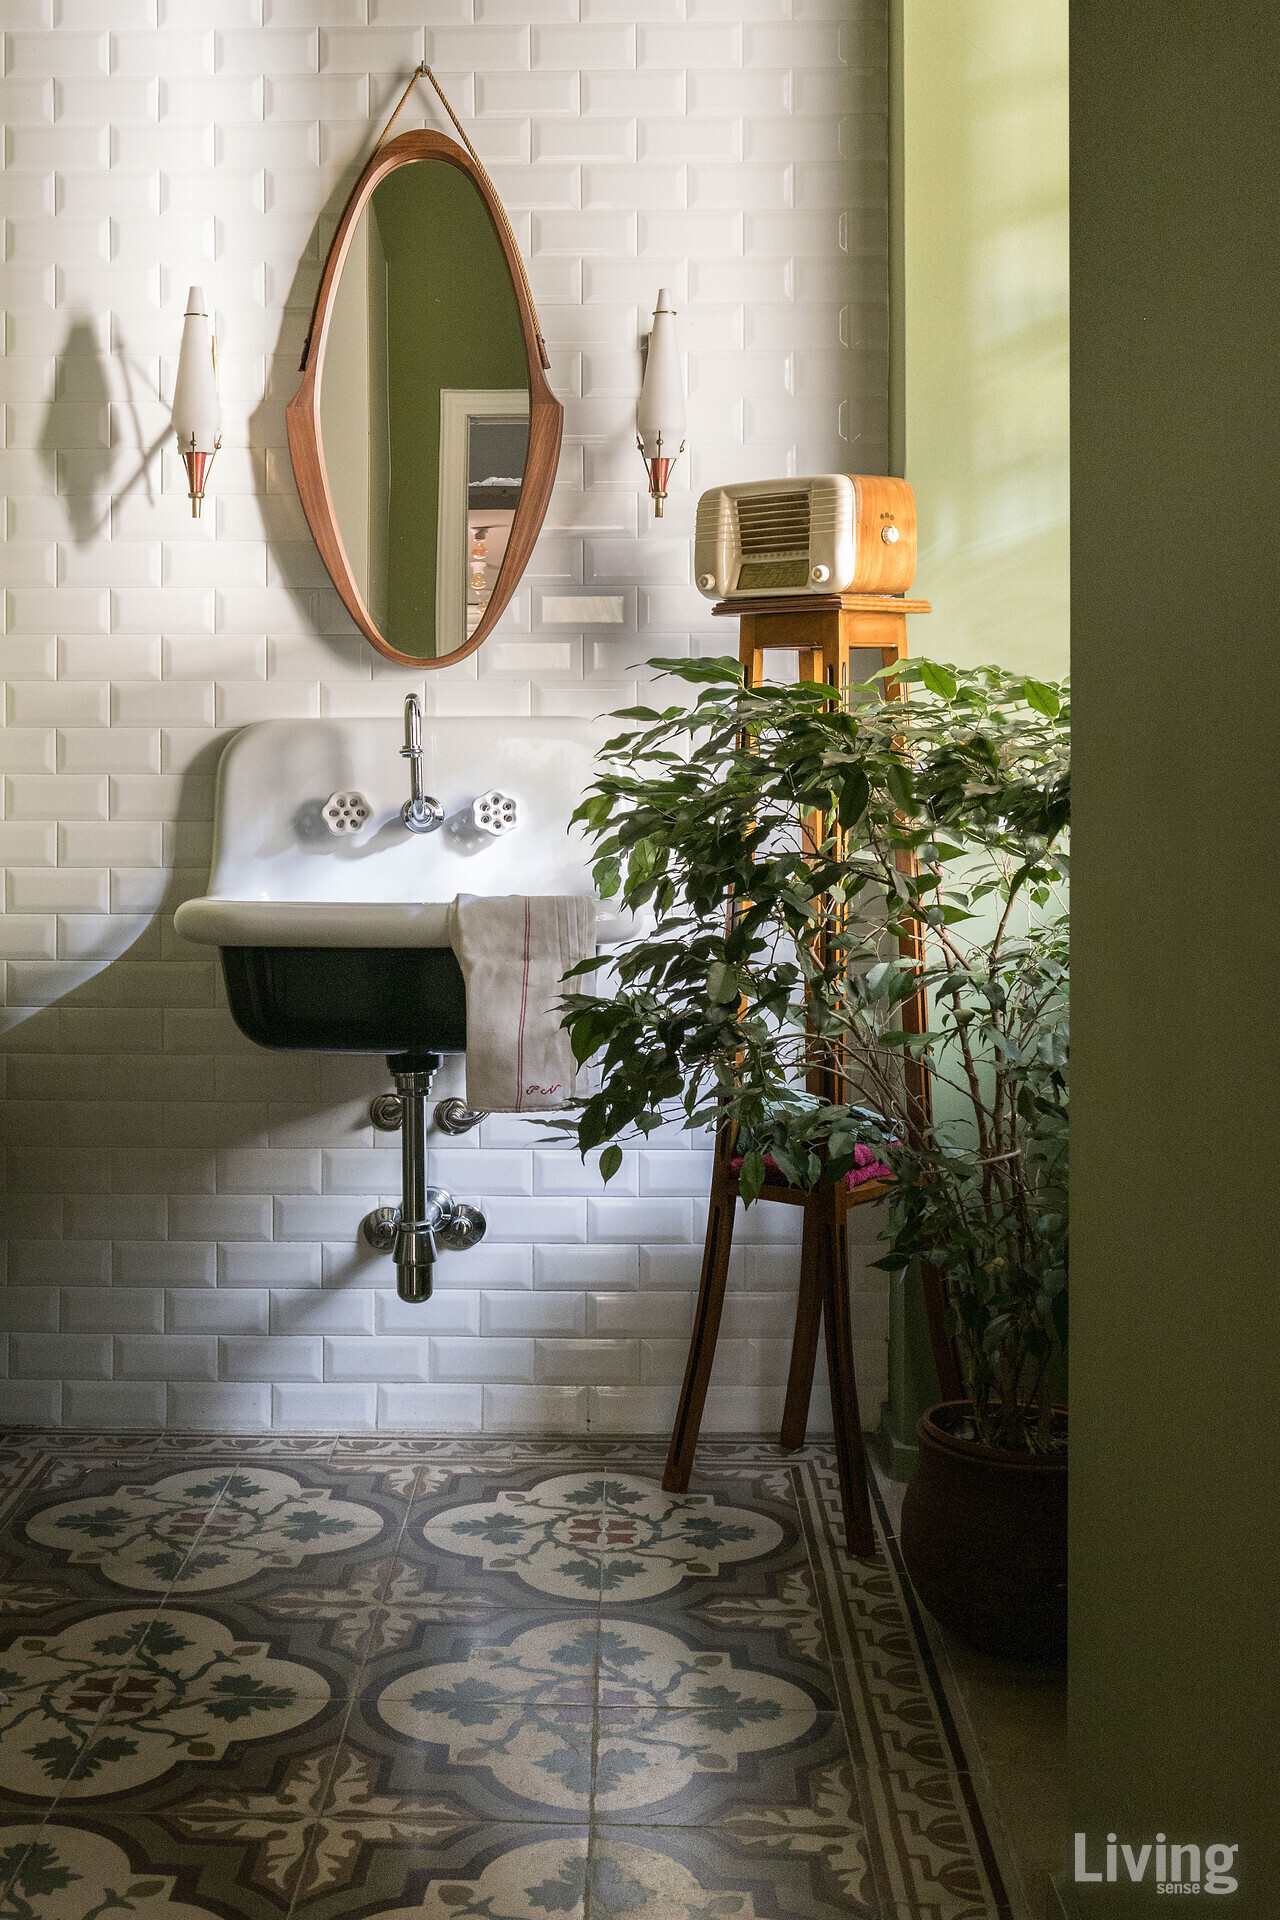 블루 프로방스bleuprovence.it의 세면대와 1950년대 앤티크 거울, 램프, 라디오 등이 만난 욕실. 원래 이 공간에서 찾아낸 리버티 시멘트 타일과 벽면의 현대적인 심플한 타일이 제각각의 앤티크 소품을 품고 있다.